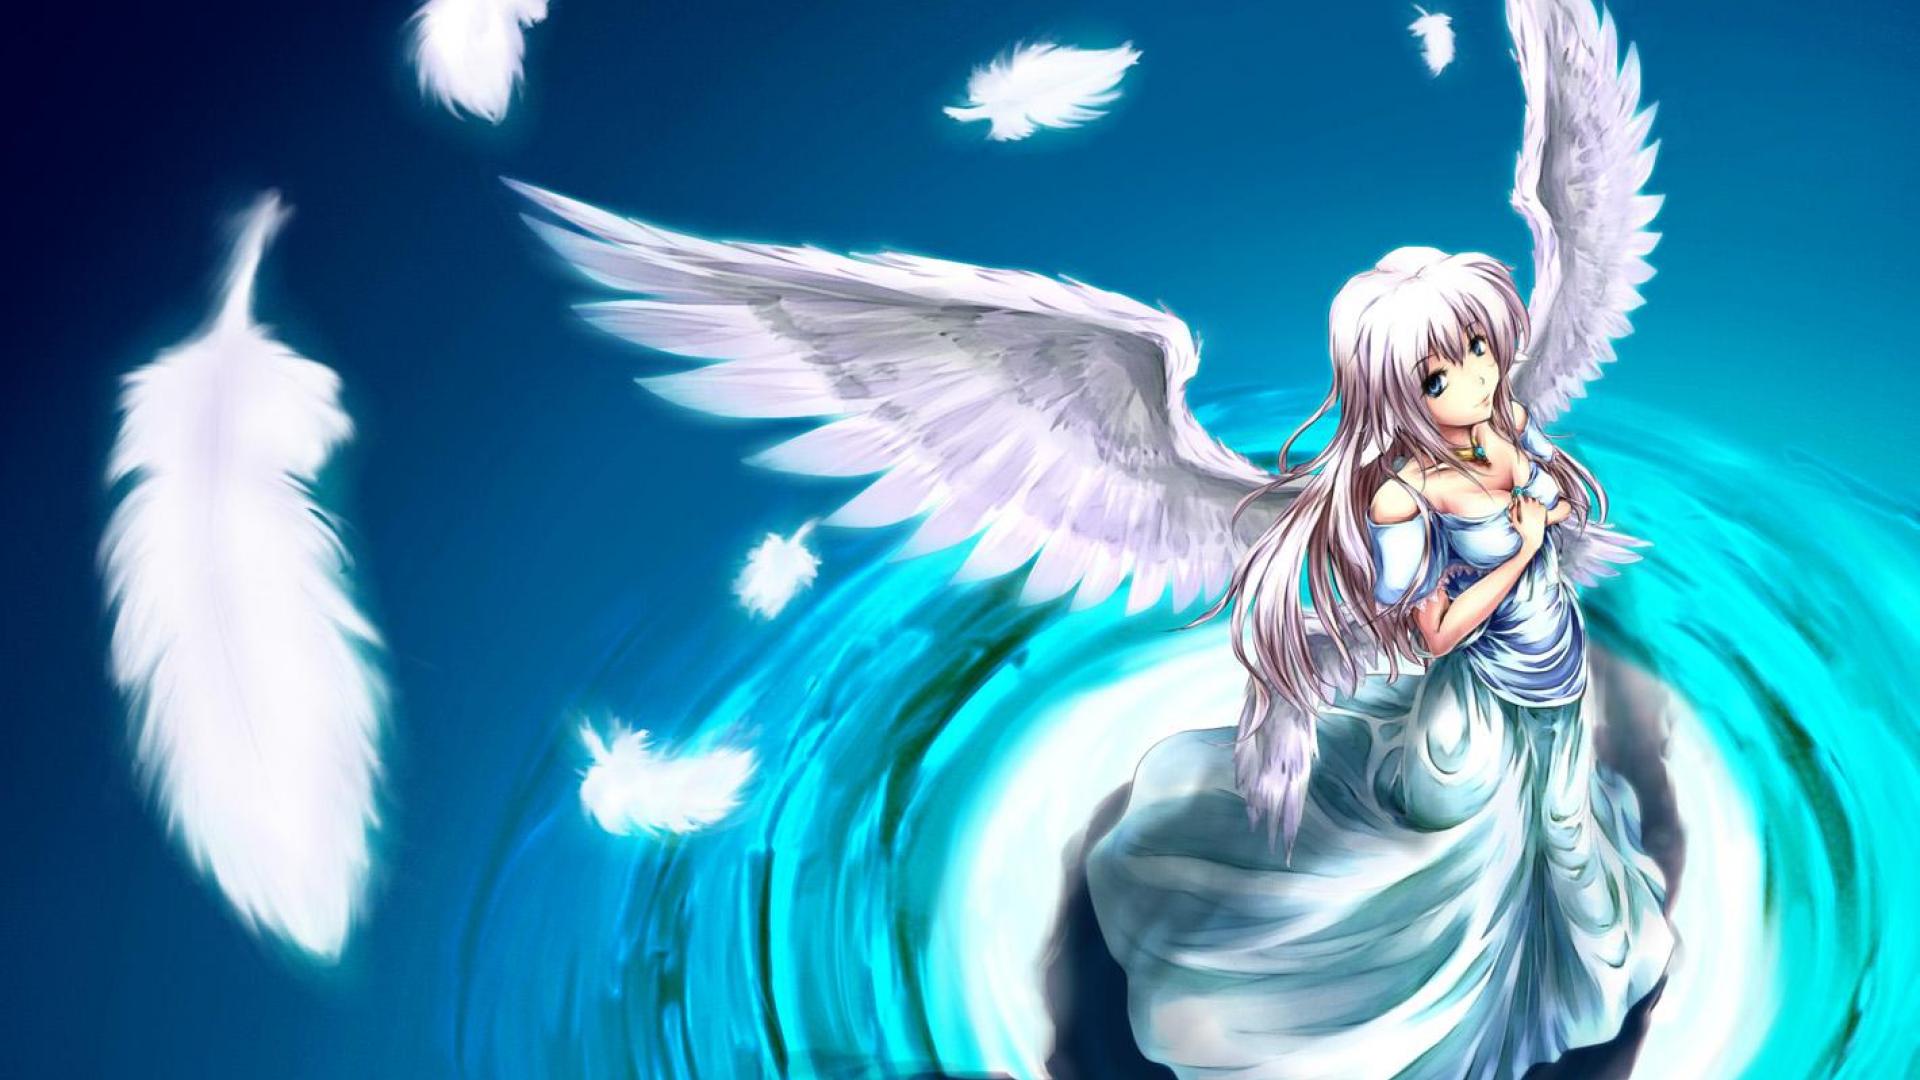 Anime Angel Wings Wallpaper Download Free - Anime Angel Hd - HD Wallpaper 